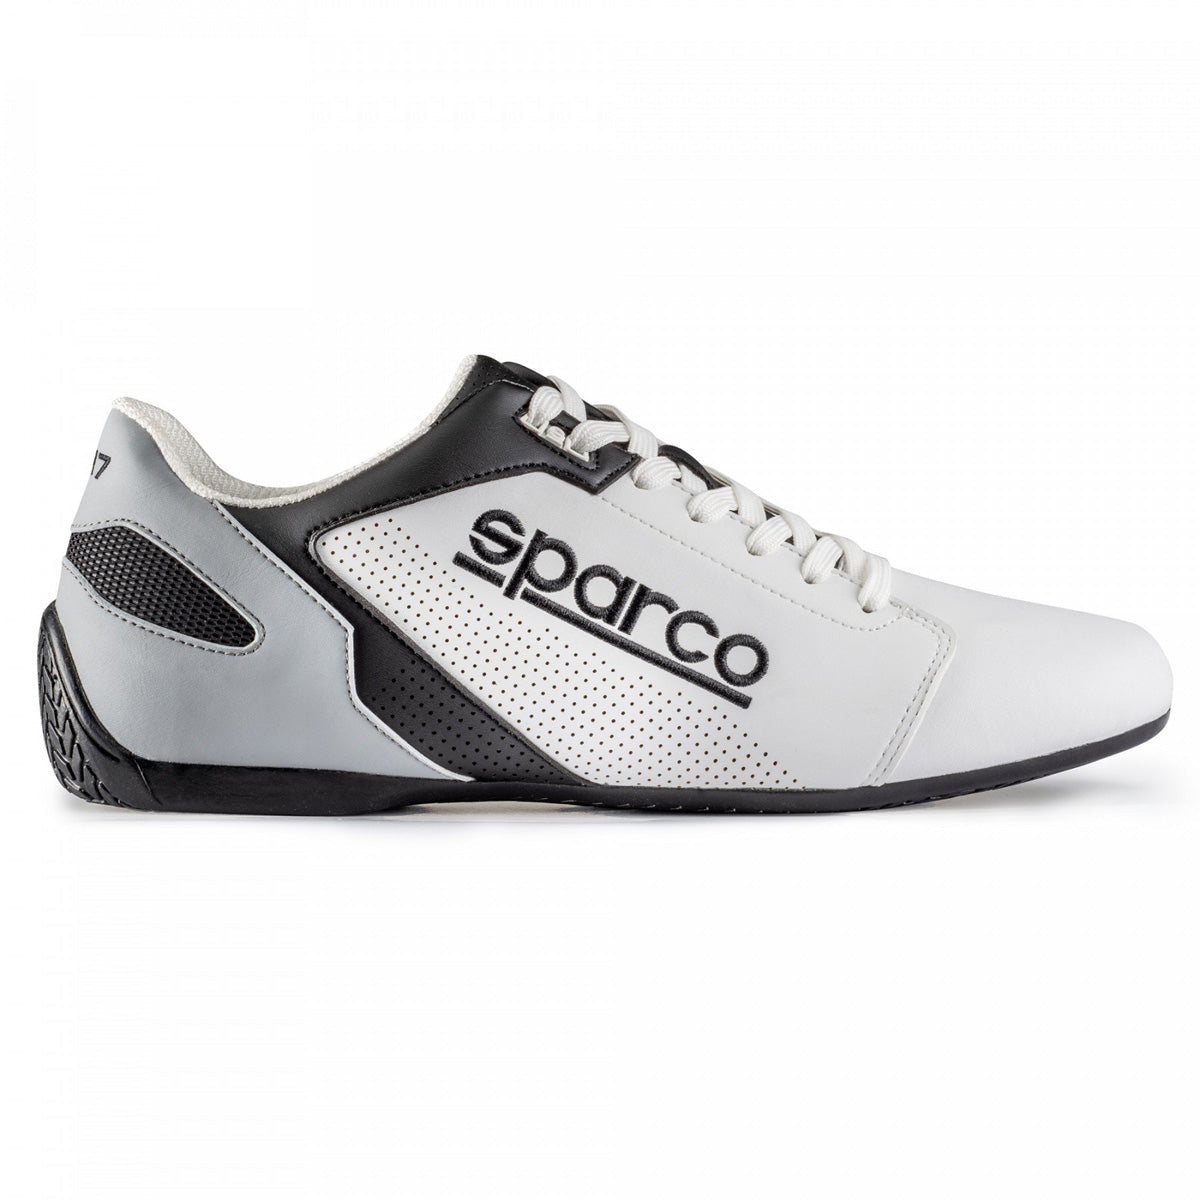 Sparco SL-17 Shoes - 2022 Colors